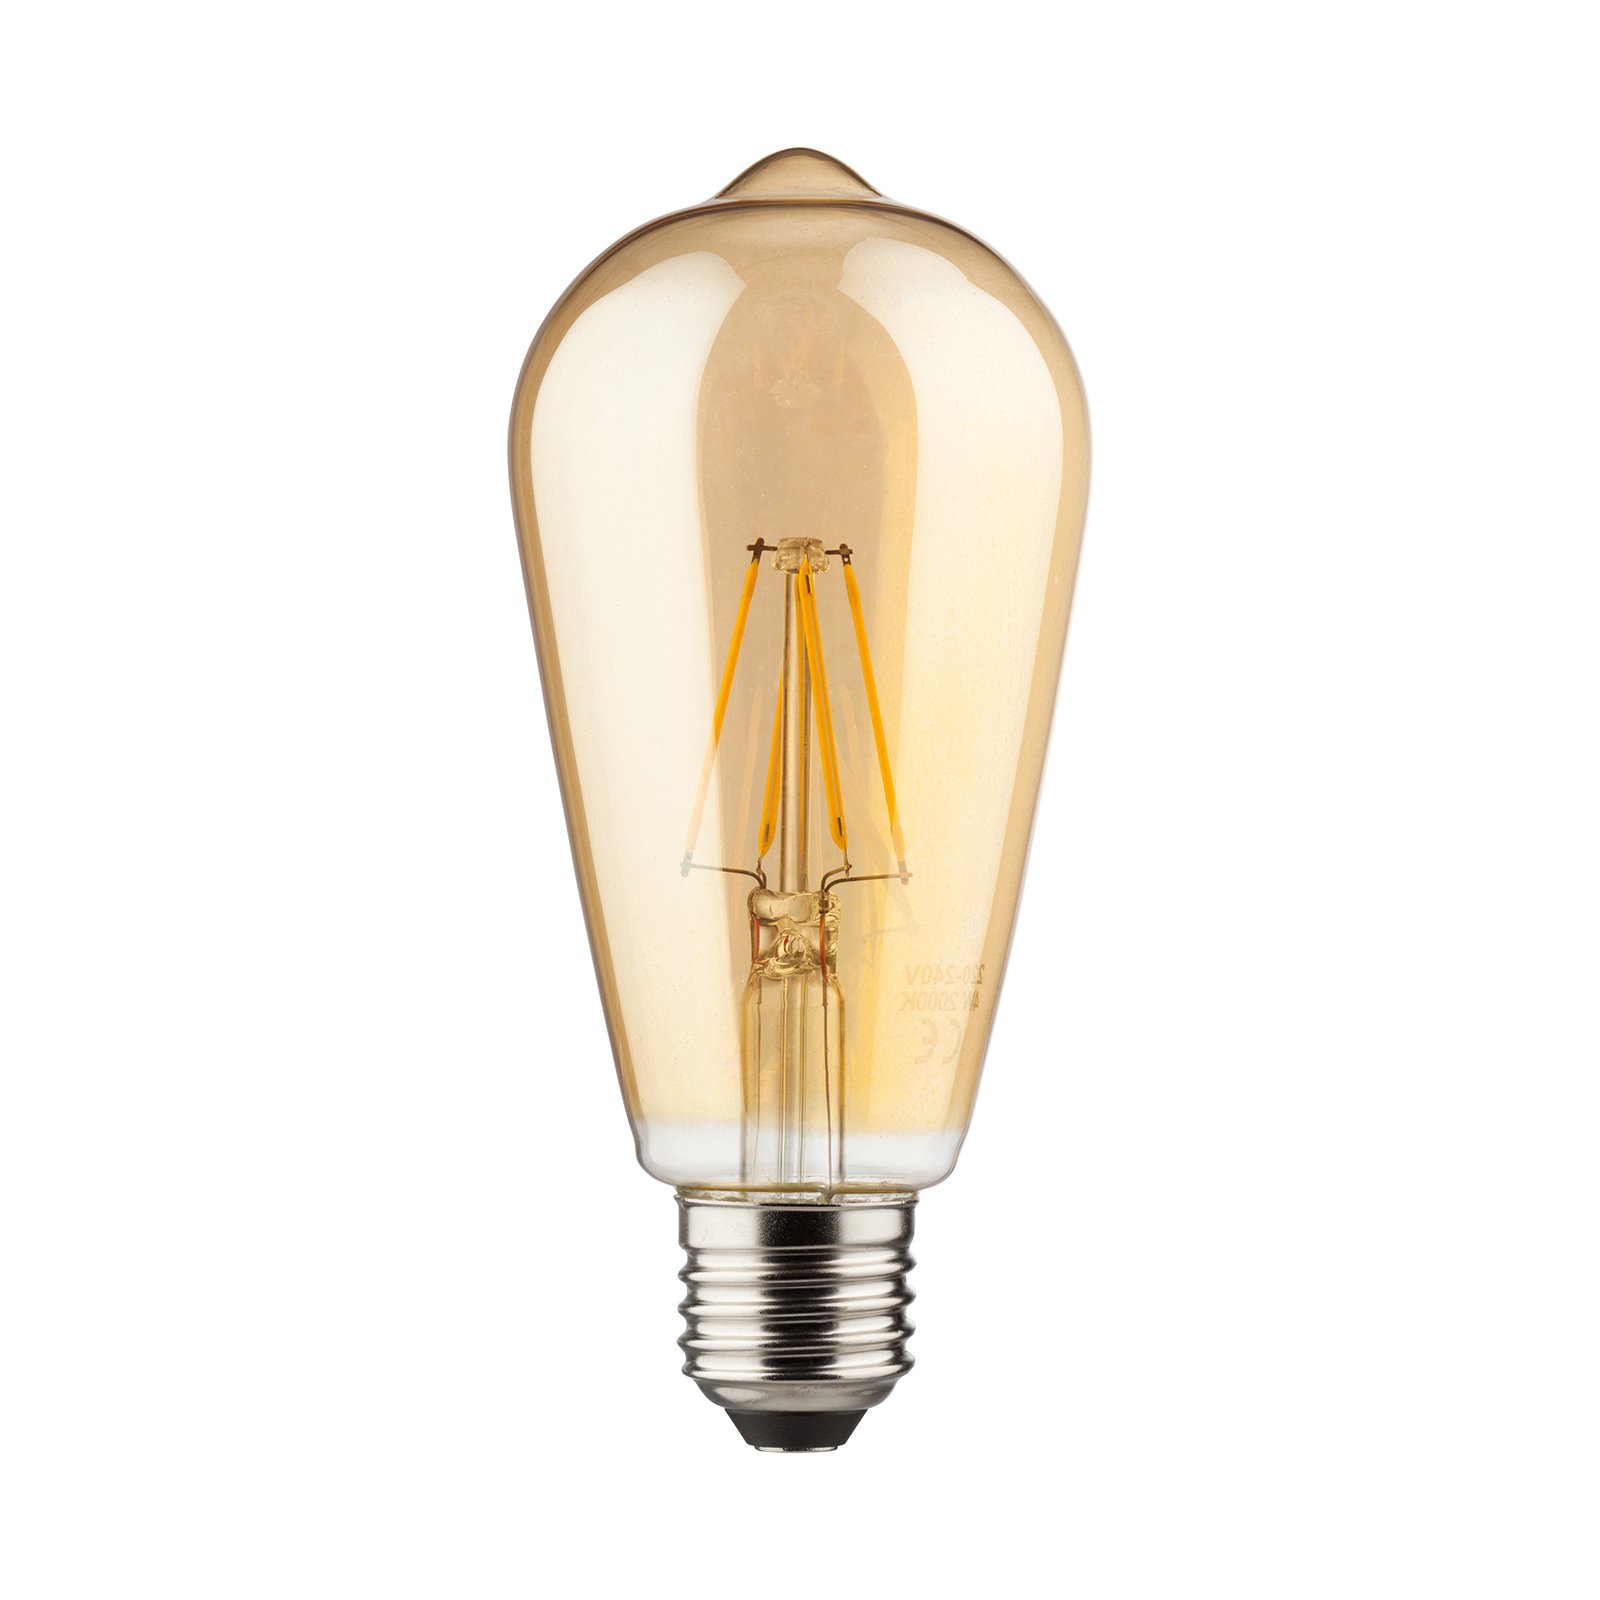 Australische persoon gelijktijdig Kalmte E27 7W LED vintage gloeilamp goud | Lampen24.be